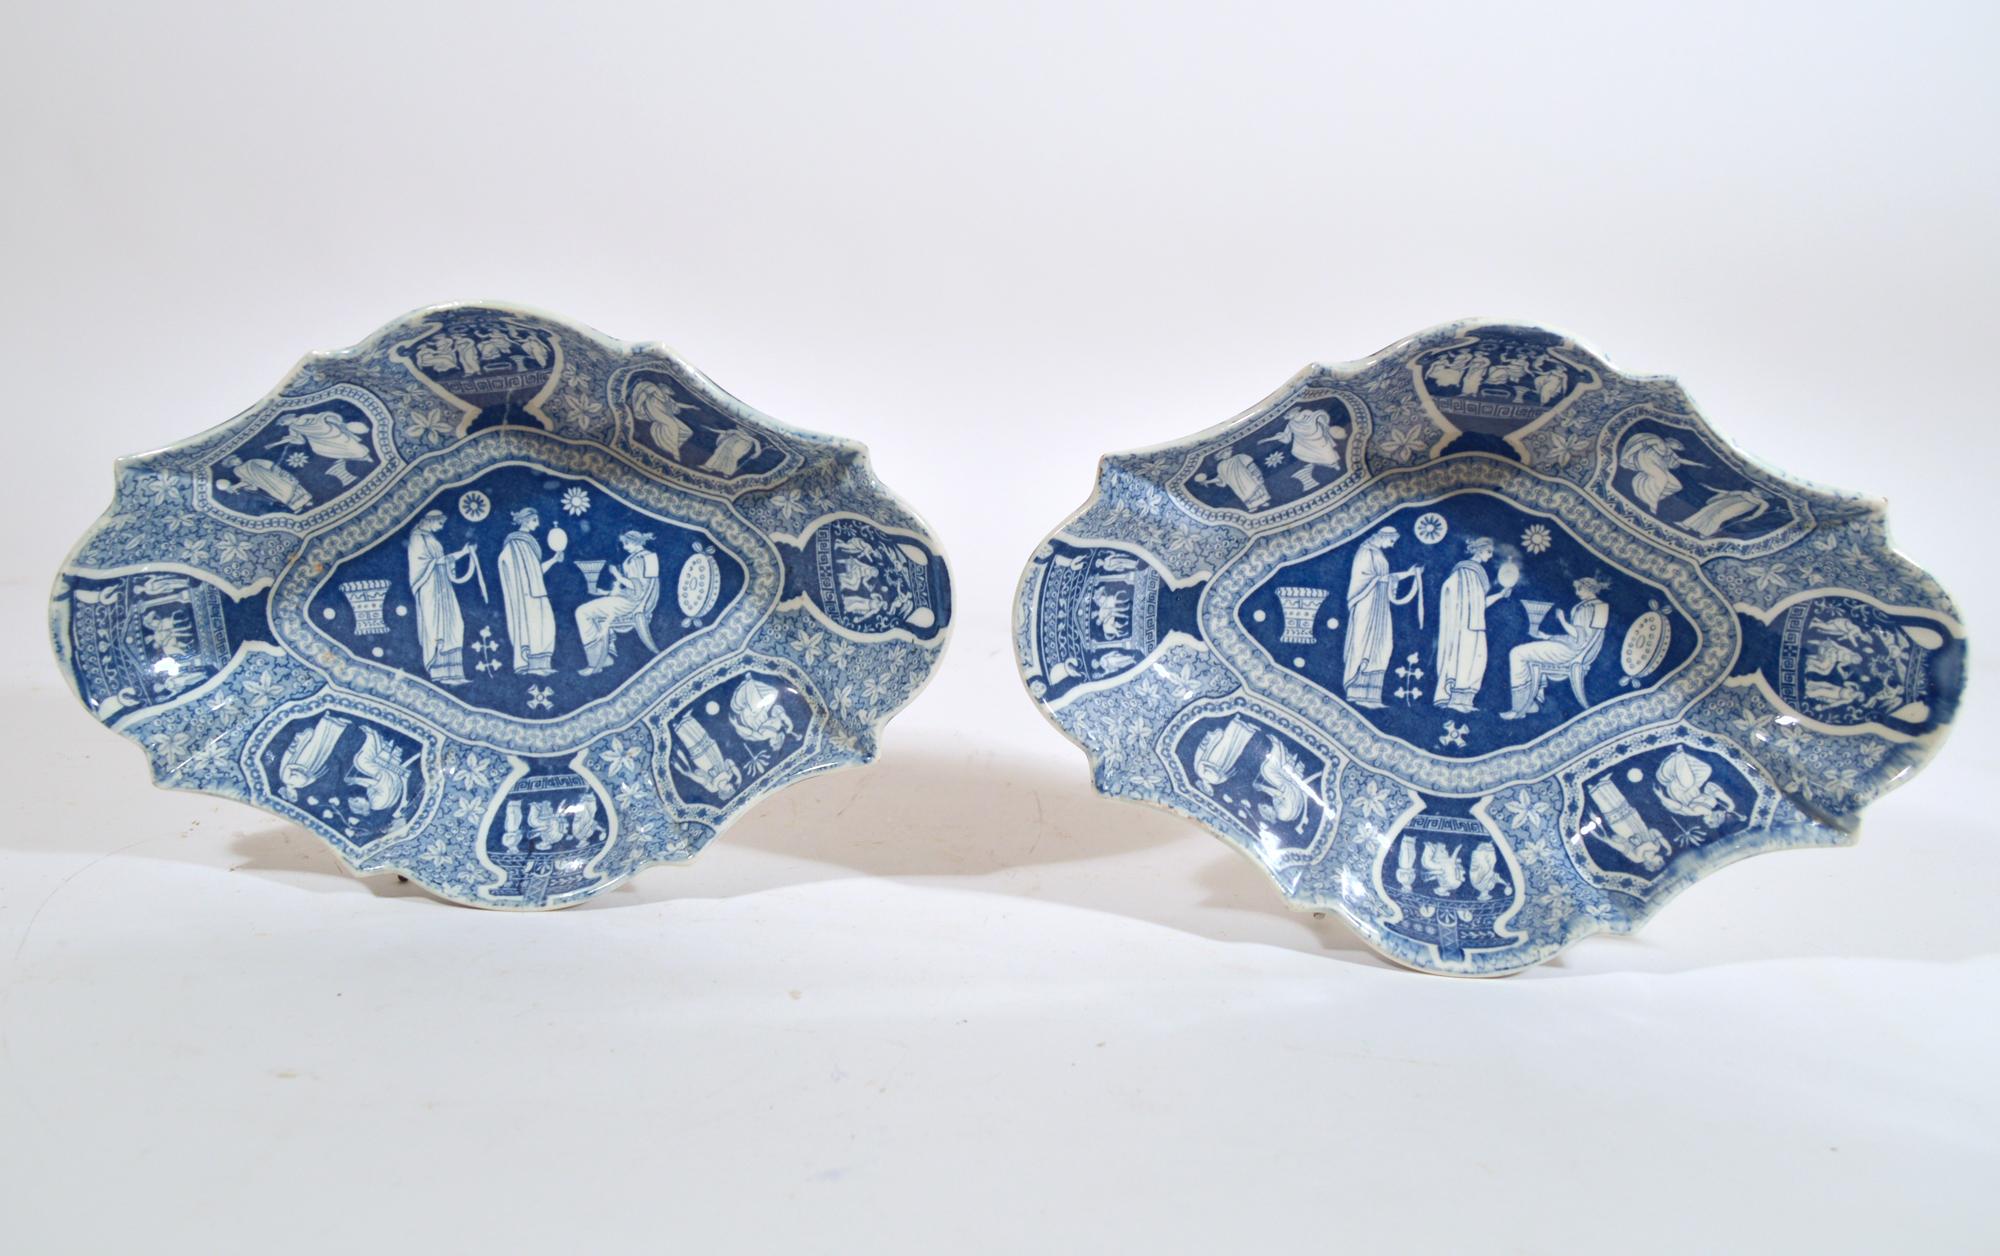 Spode neo-klassische griechische Muster blau oval Dessertteller,
Eine häusliche Zeremonie,
Anfang des 19. Jahrhunderts

Das Geschirr mit griechischem Muster von Spode ist blau bedruckt mit 